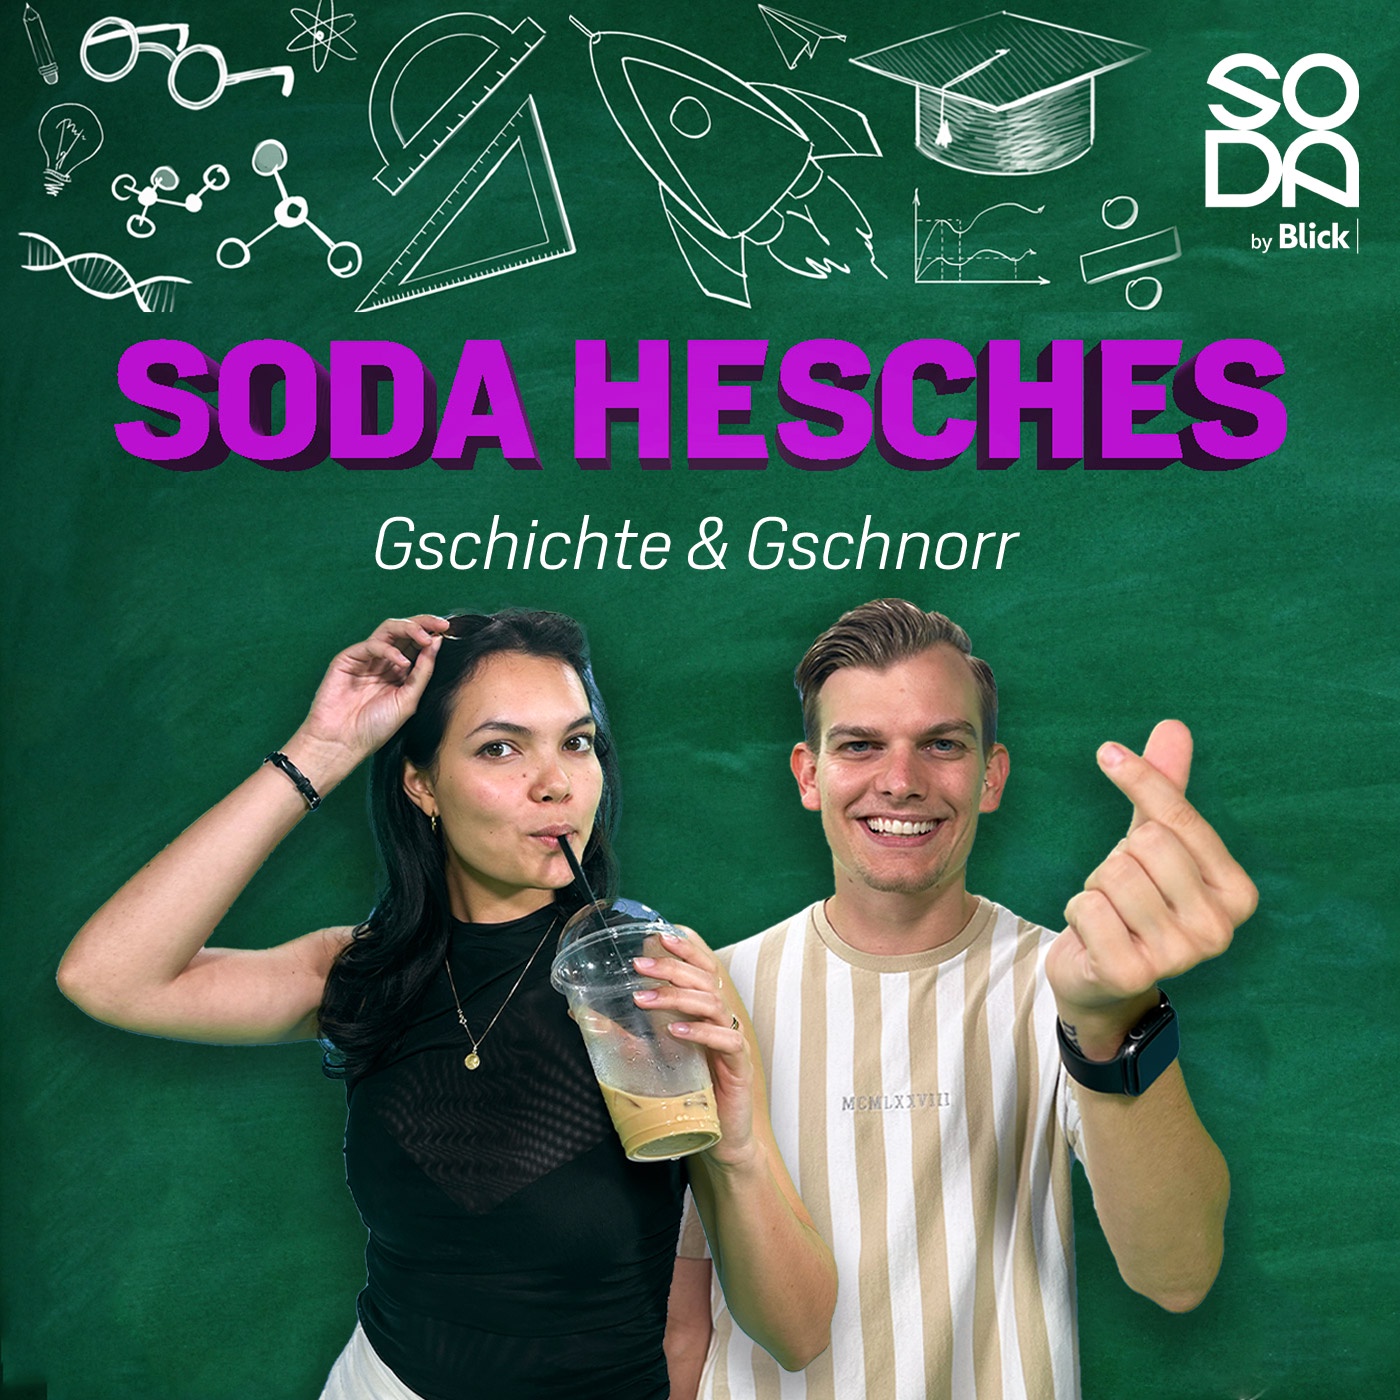 SODA HESCHES – Gschichte und Gschnorr